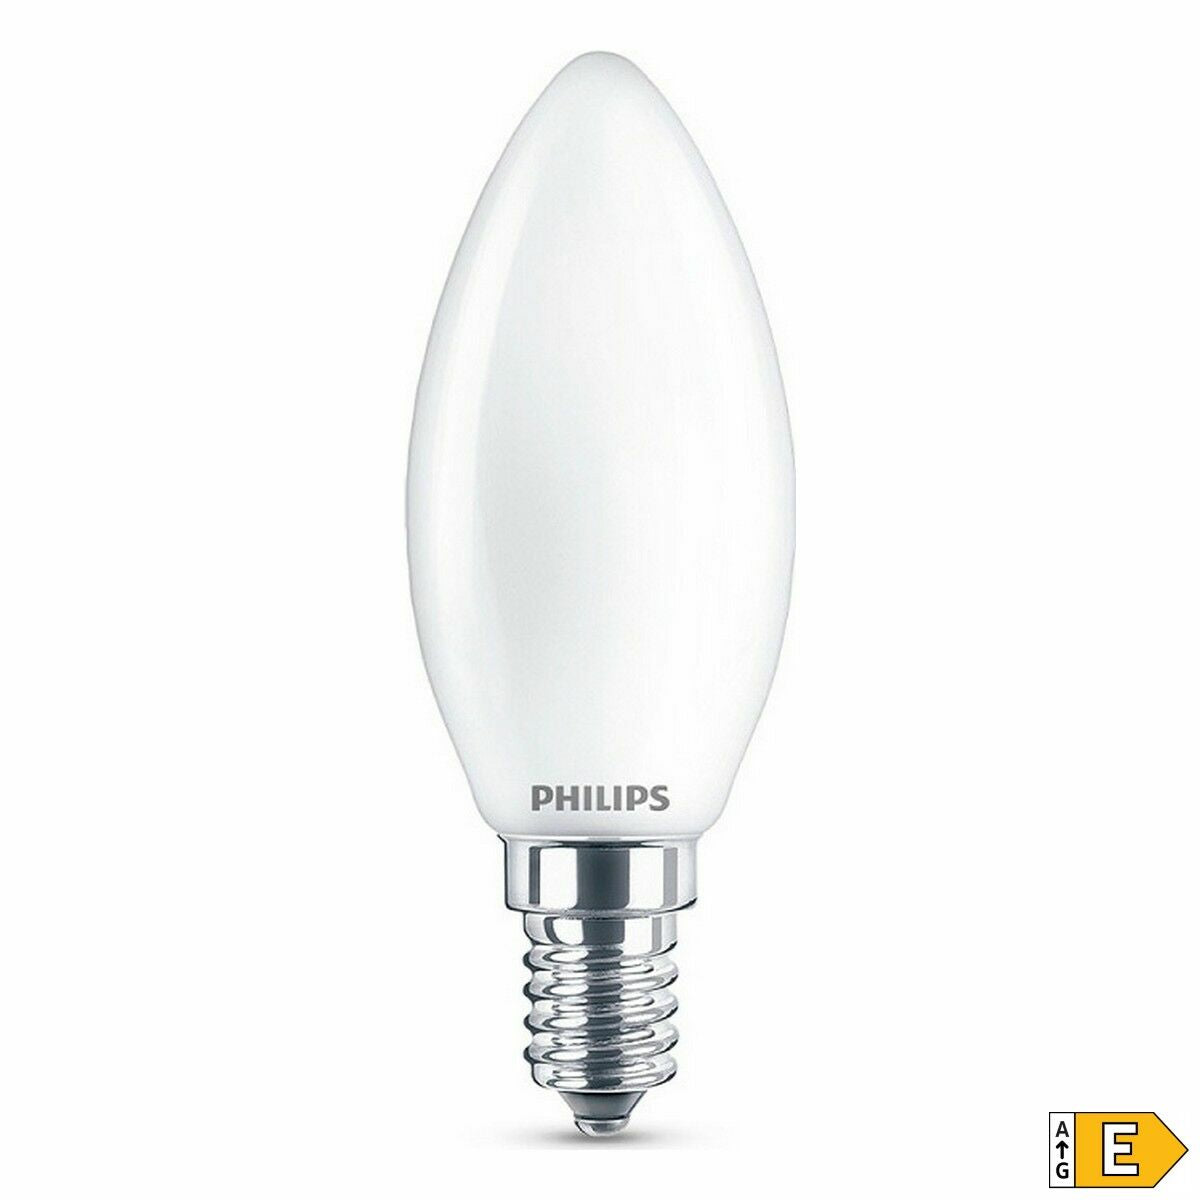 Ledlamp Philips Kaars E 6,5 W E14 806 lm 3,5 x 9,7 cm (6500 K)